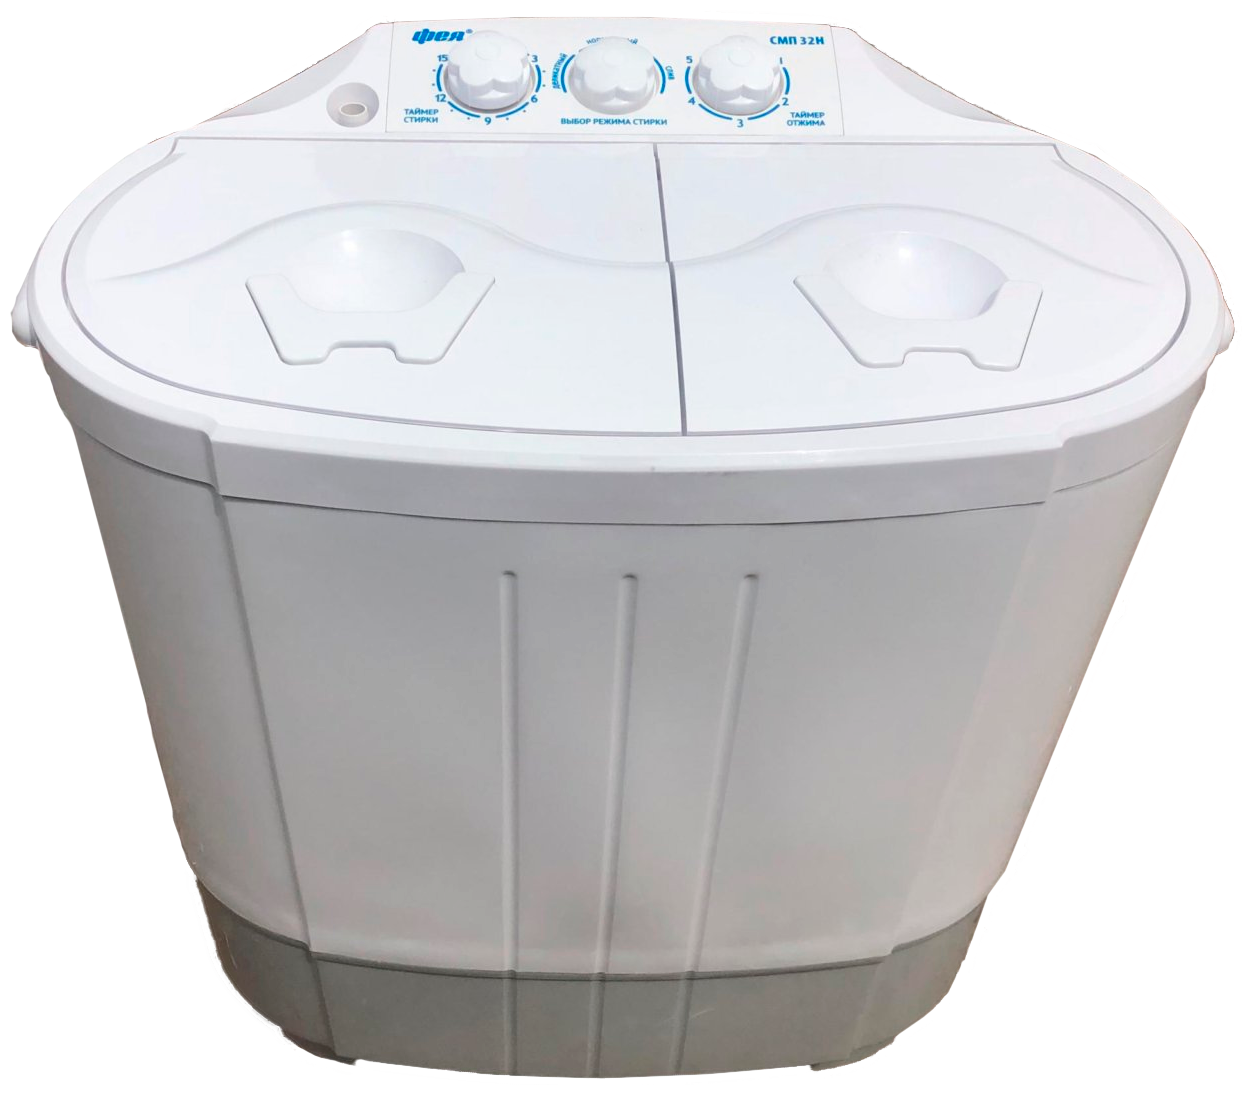 Активаторная стиральная машина Фея СМП-32Н, белый — купить в интернет-магазине по низкой цене на Яндекс Маркете